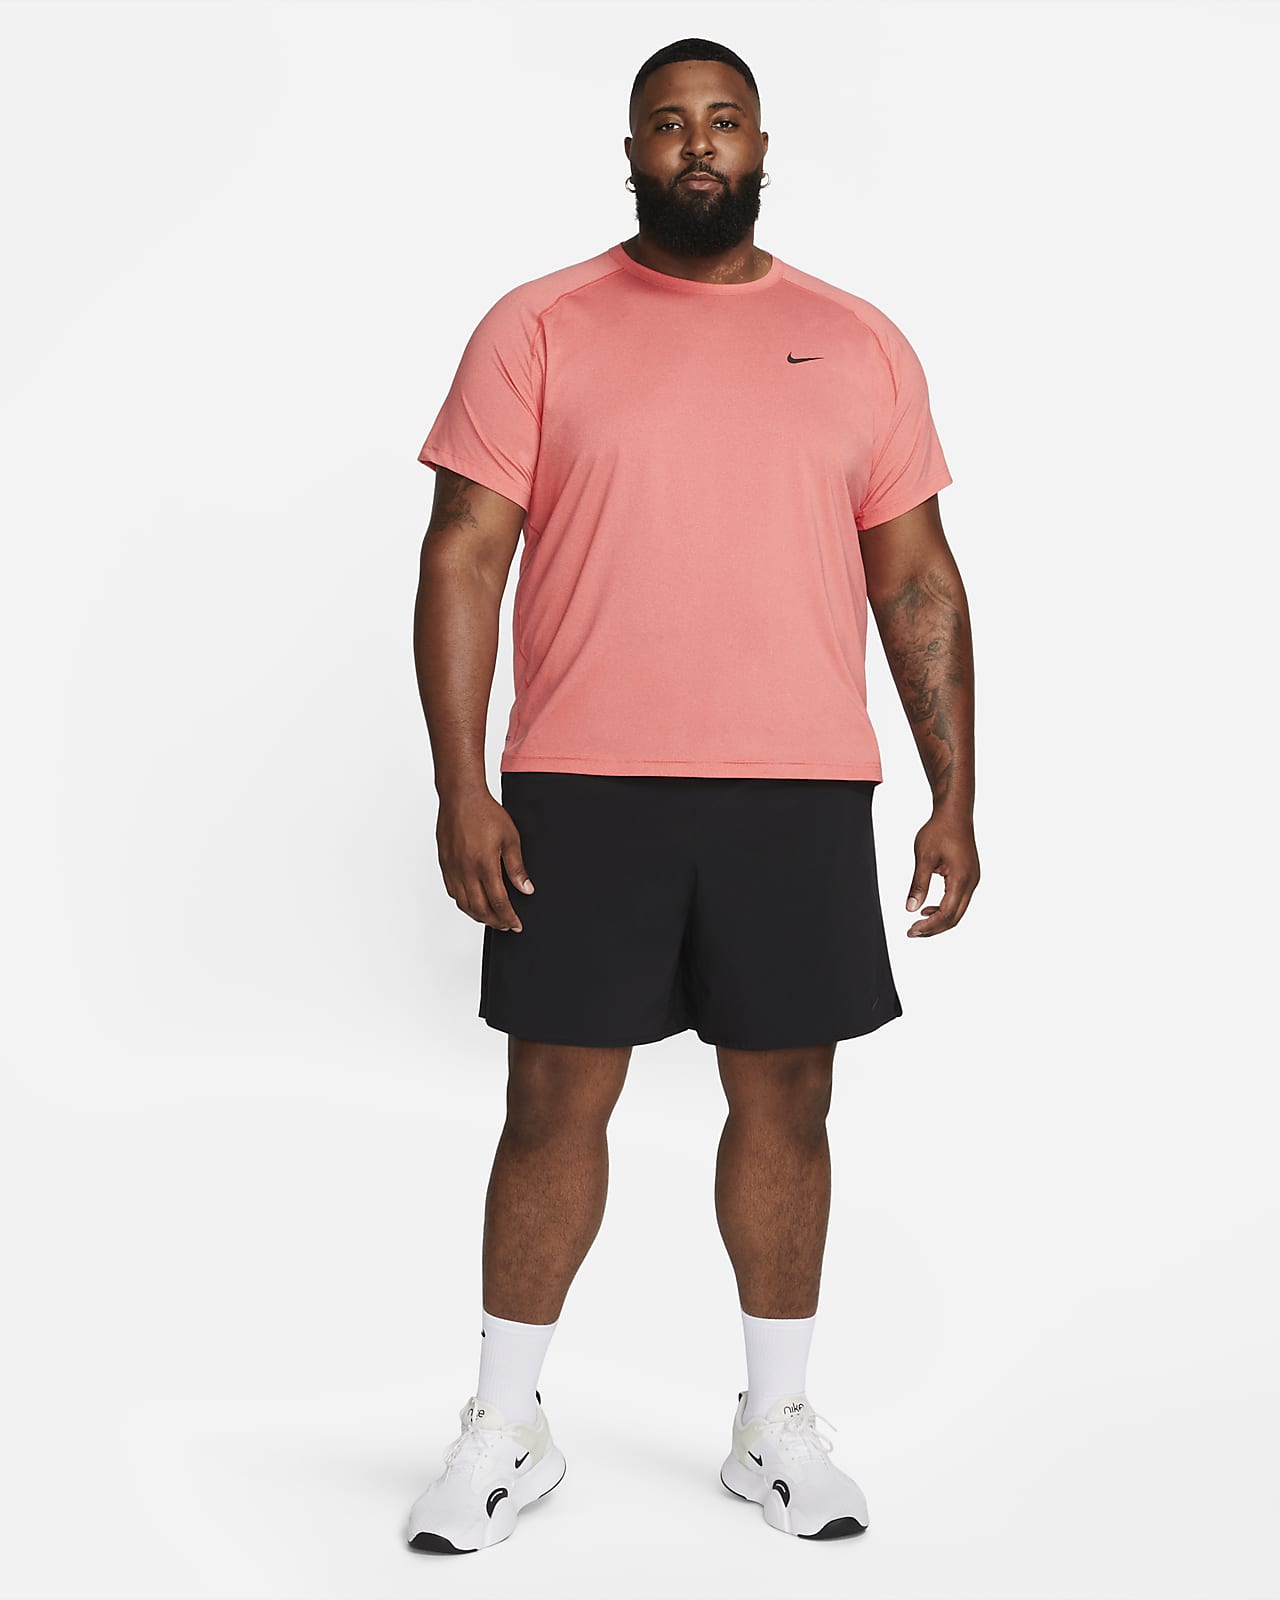 Nike Ready Men's Dri-FIT Fitness Tank.